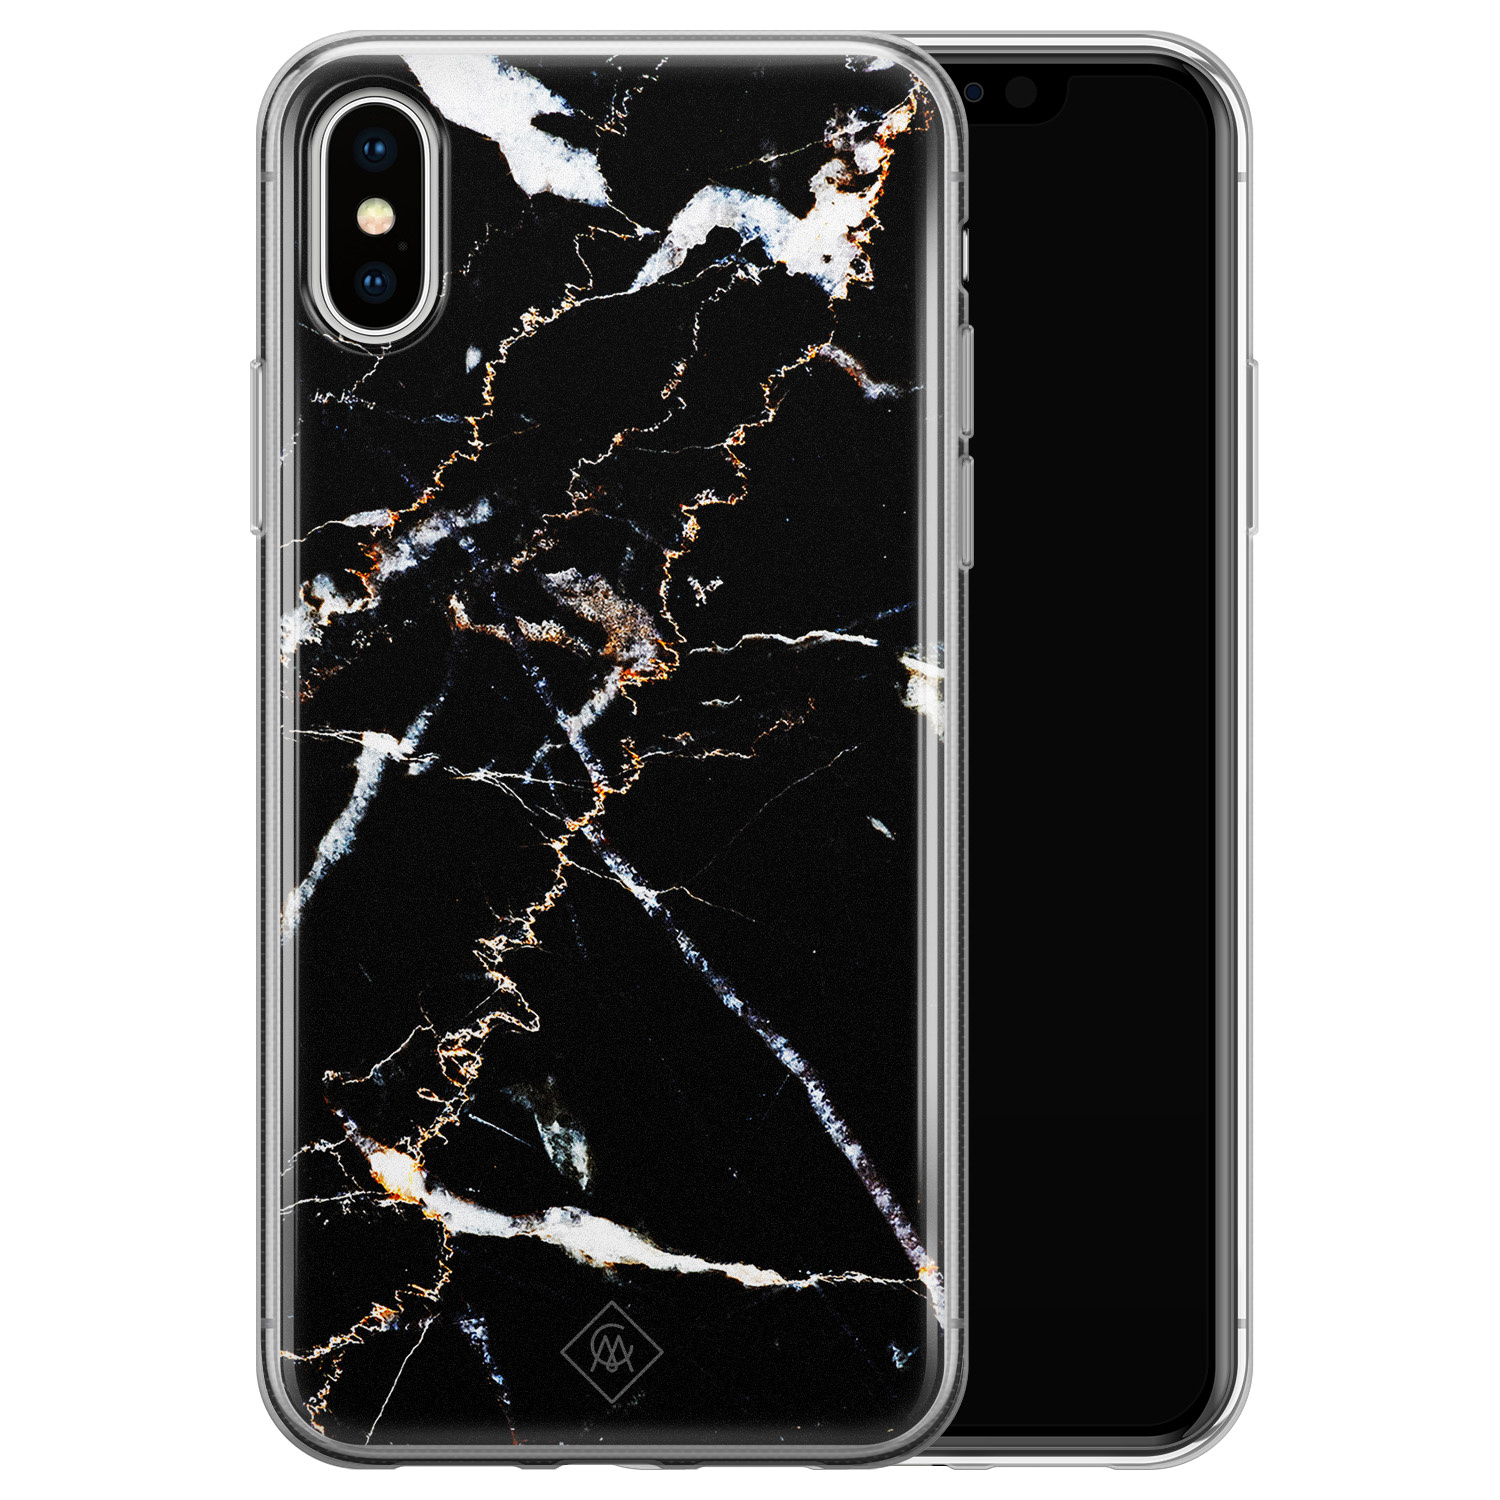 monteren top Baffle iPhone X/XS siliconen hoesje - Marmer zwart - Casimoda.nl